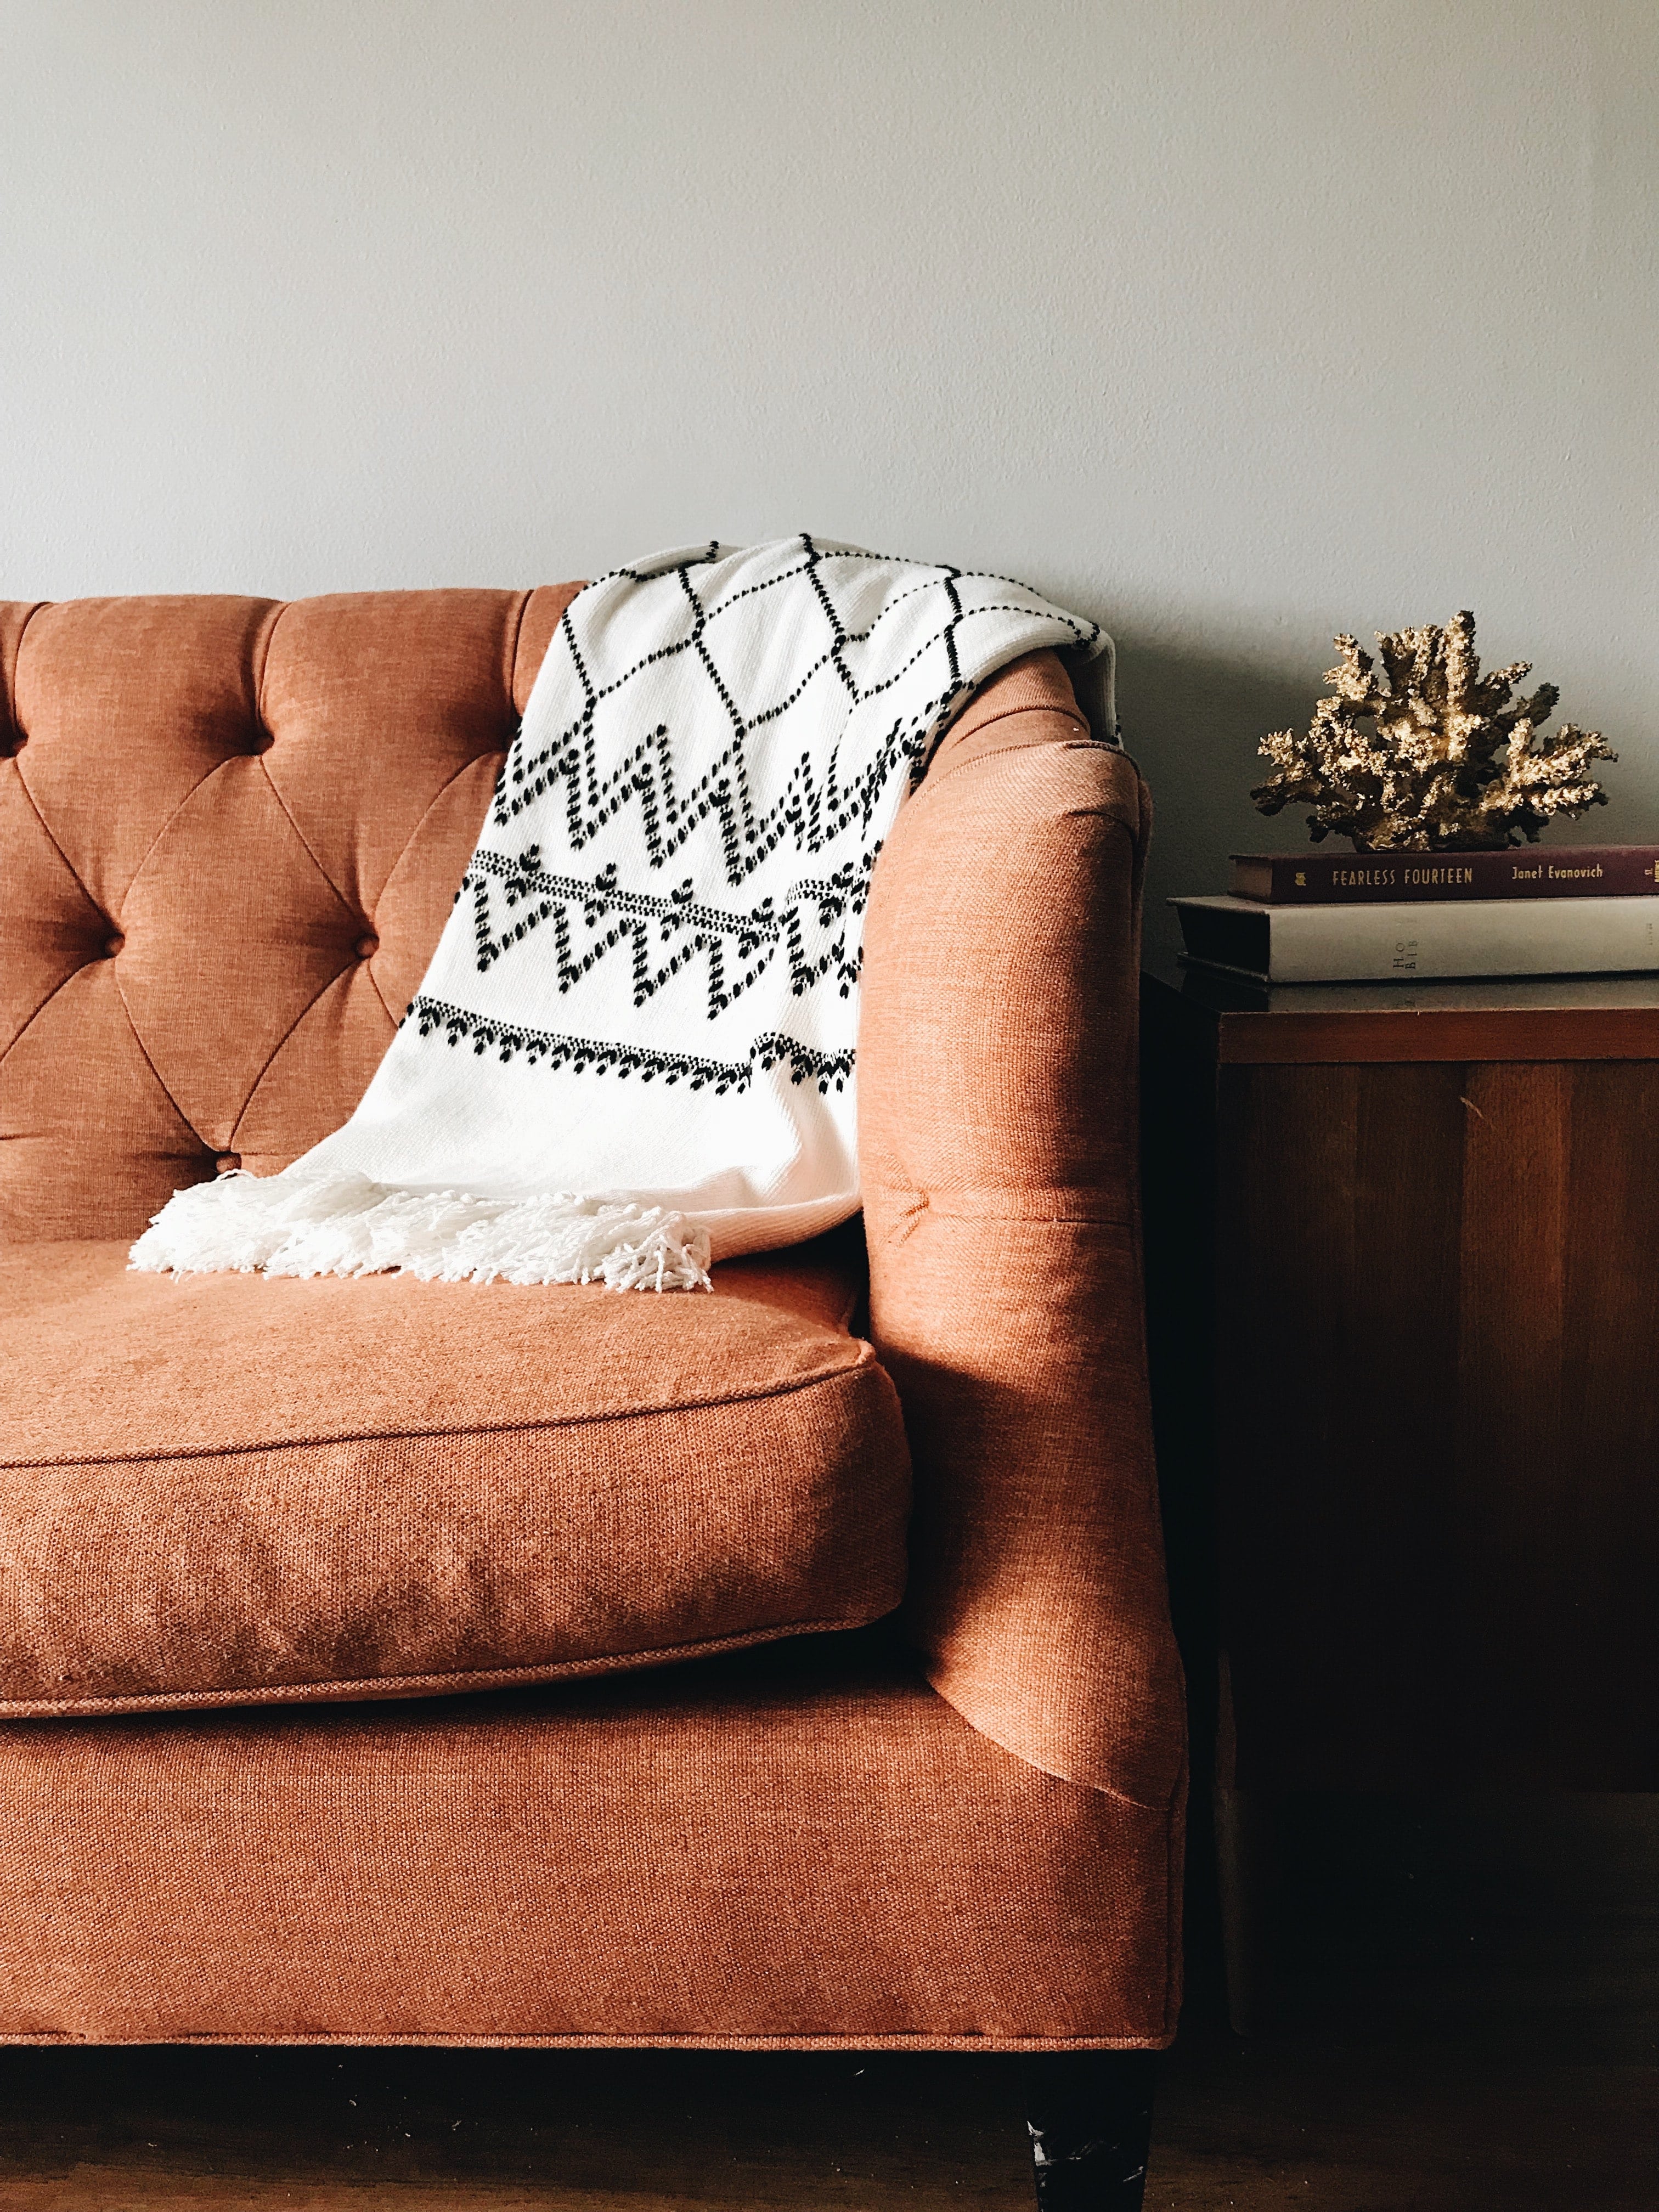 suede-brown-sofa